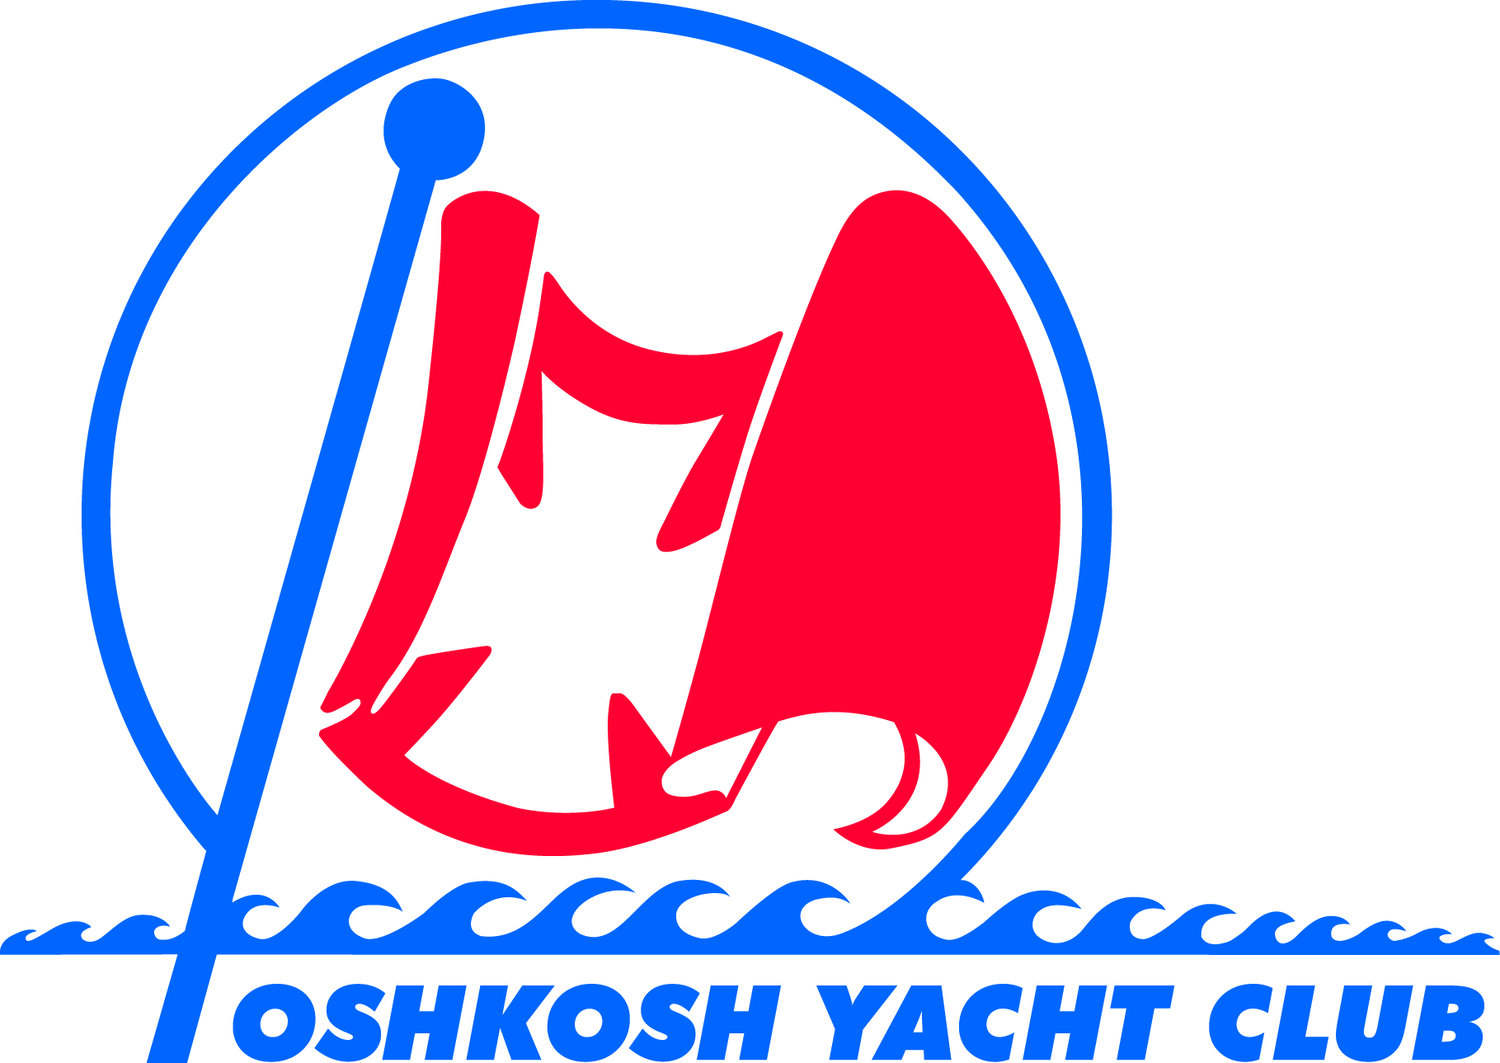 Oshkosh Yacht Club